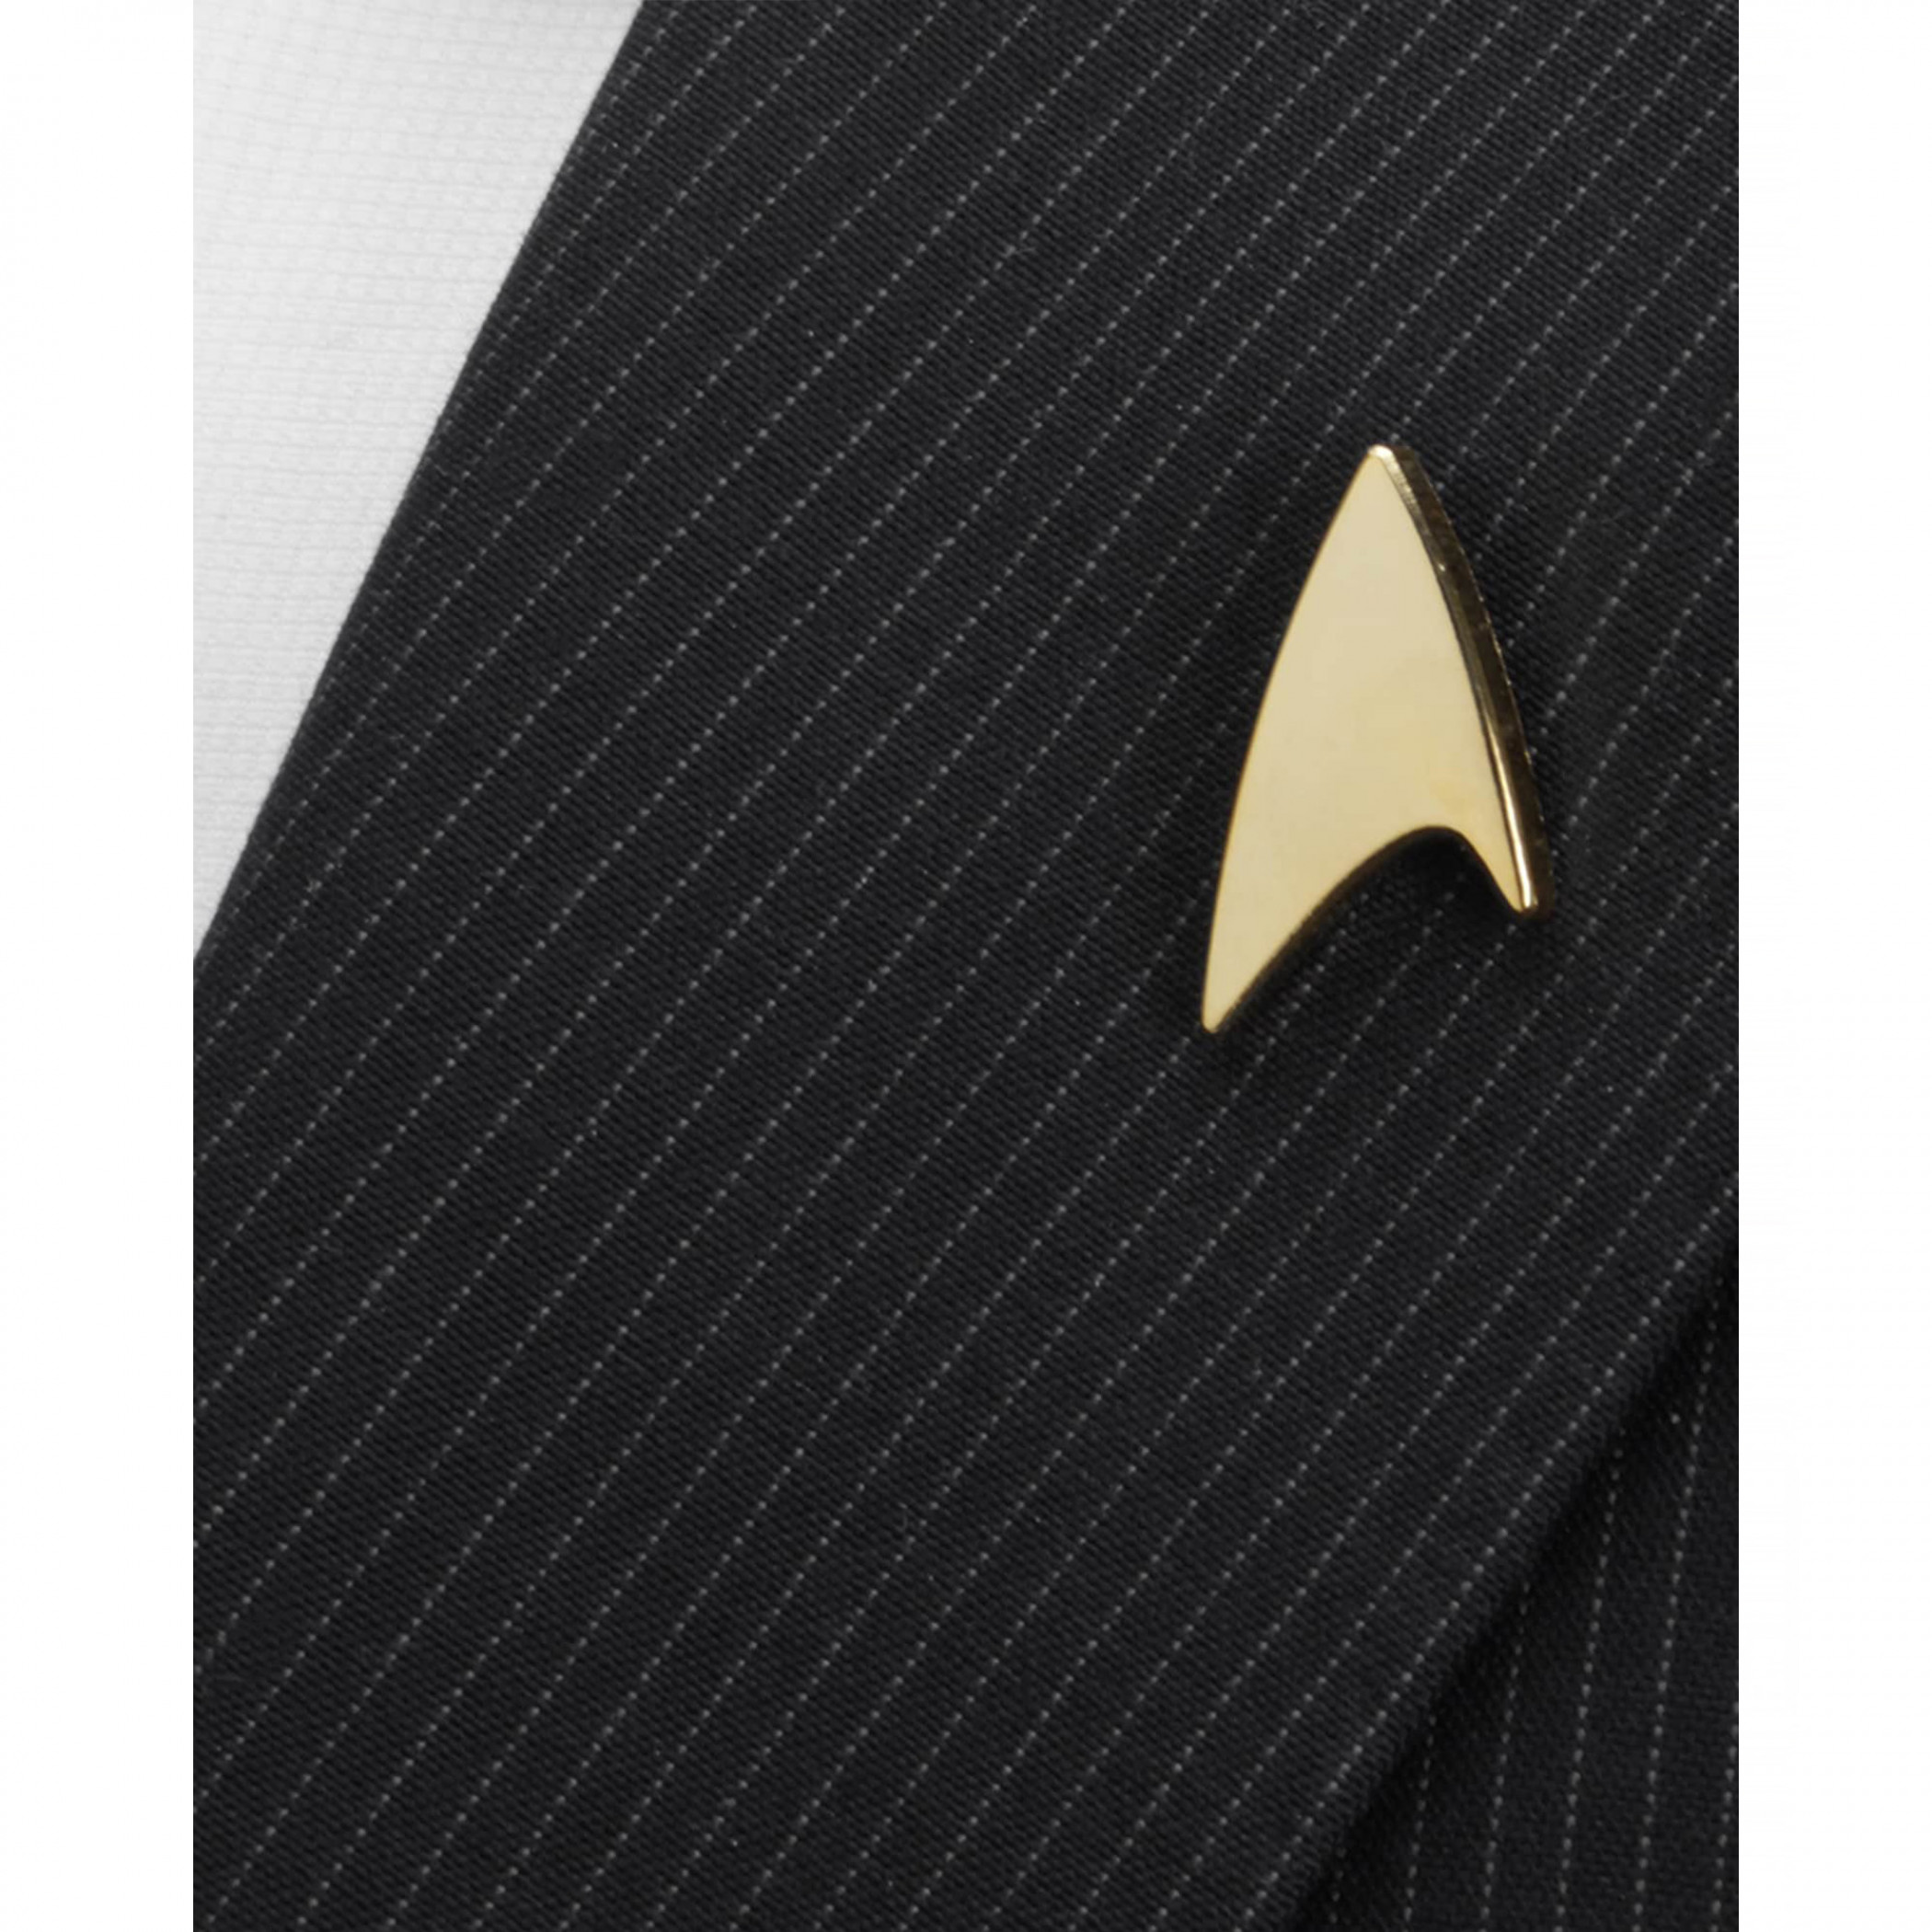 Gold Delta Shield Star Trek Lapel Pin